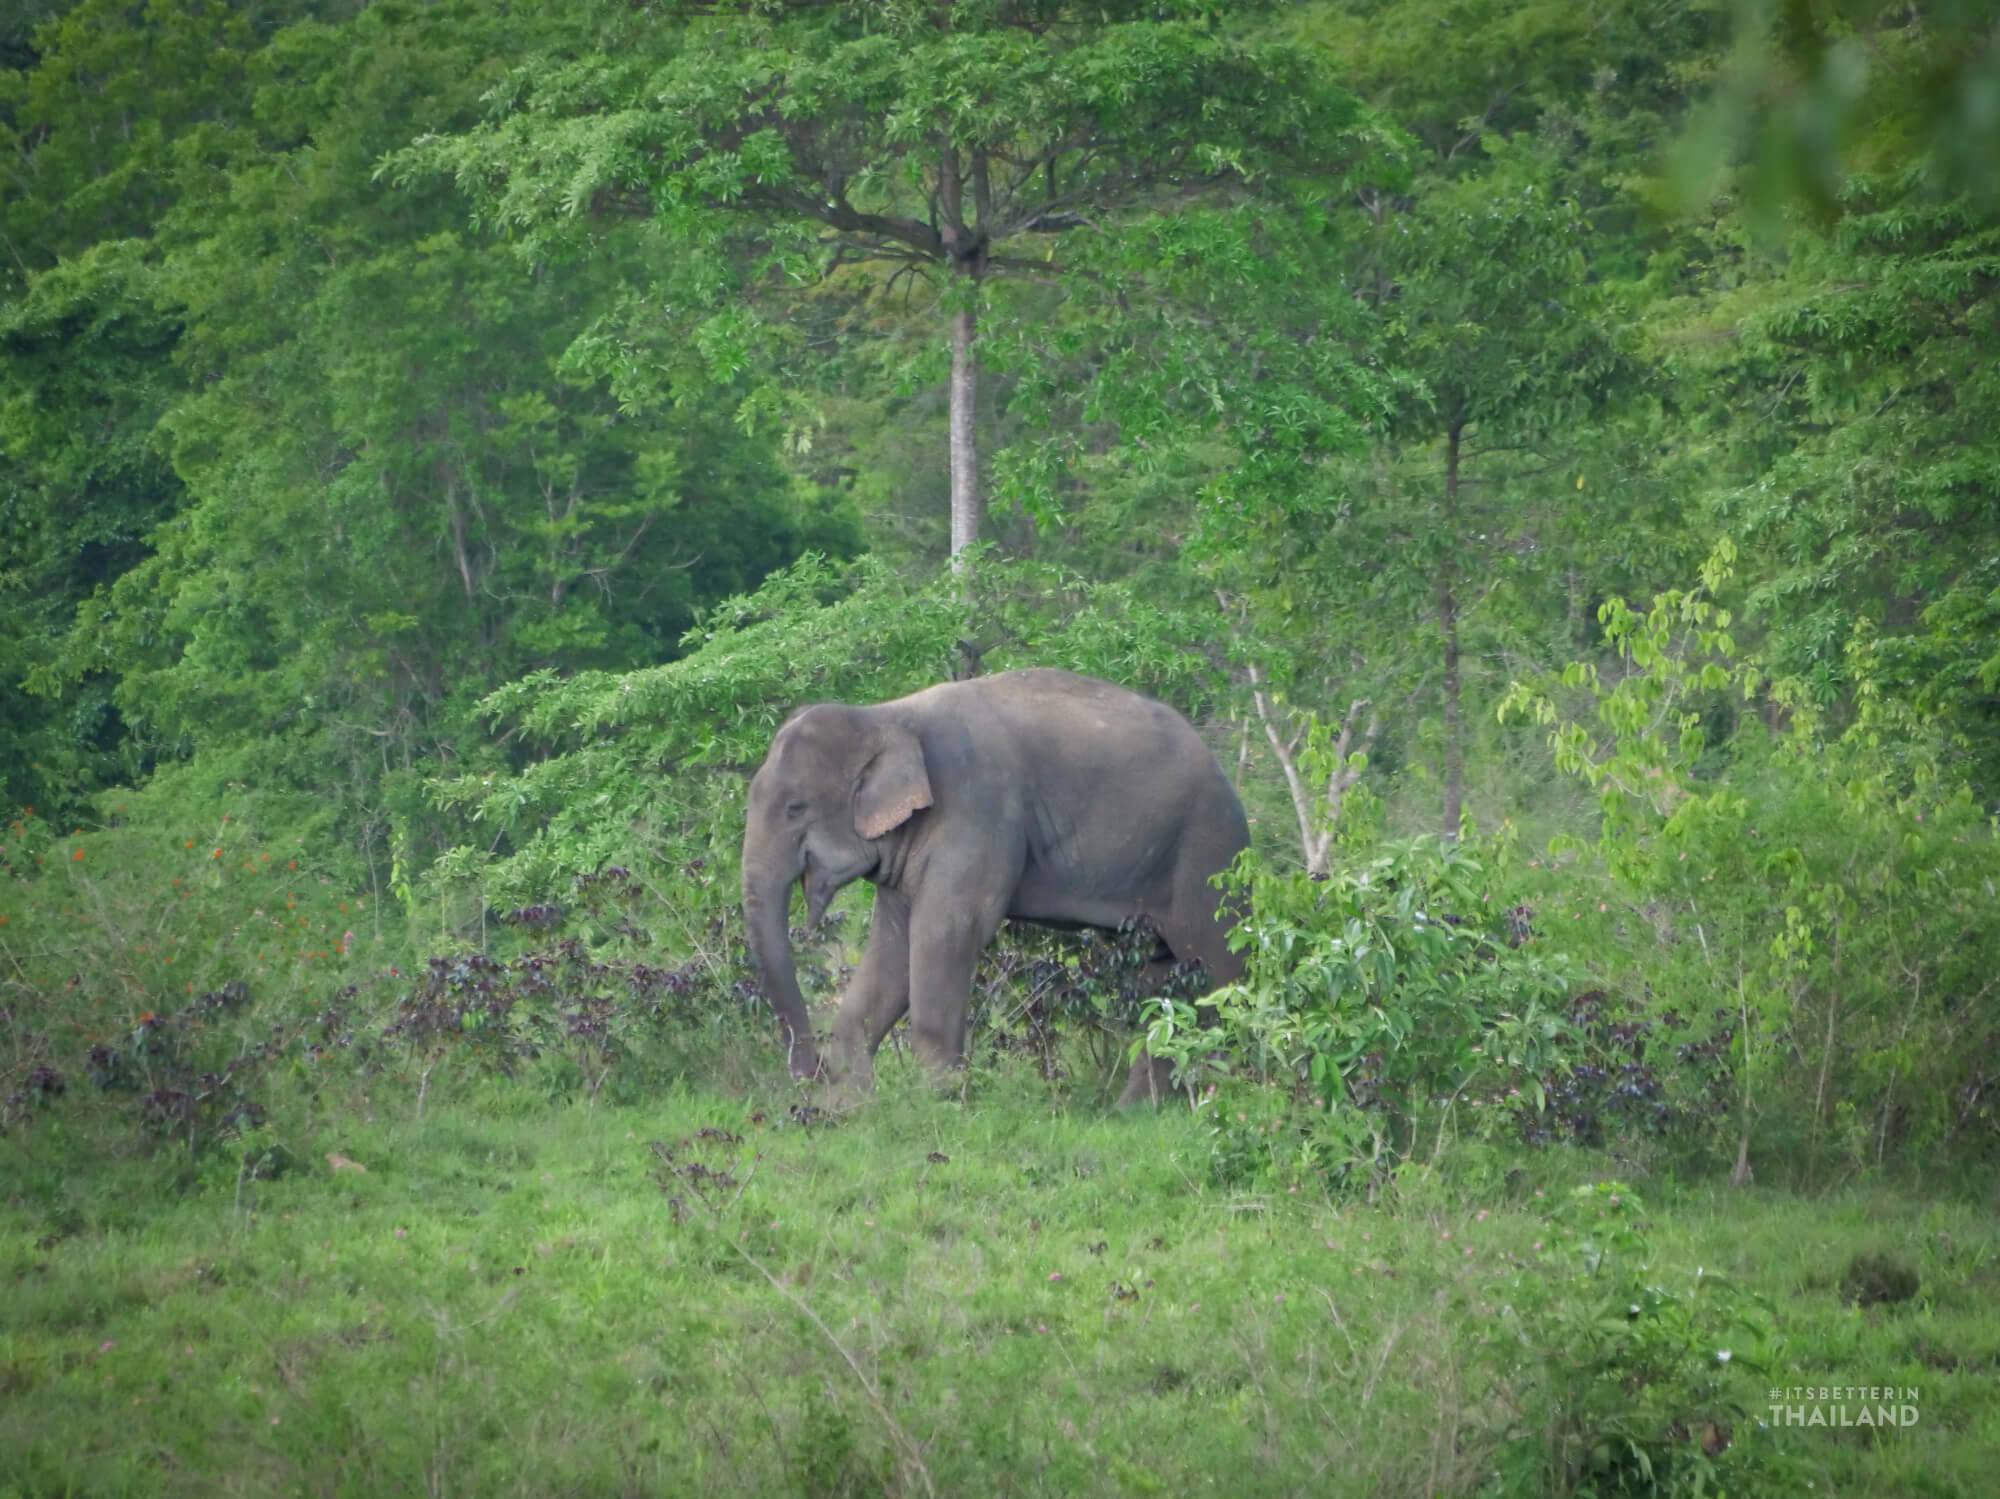 wild elephants in Thailand at Kuibuir